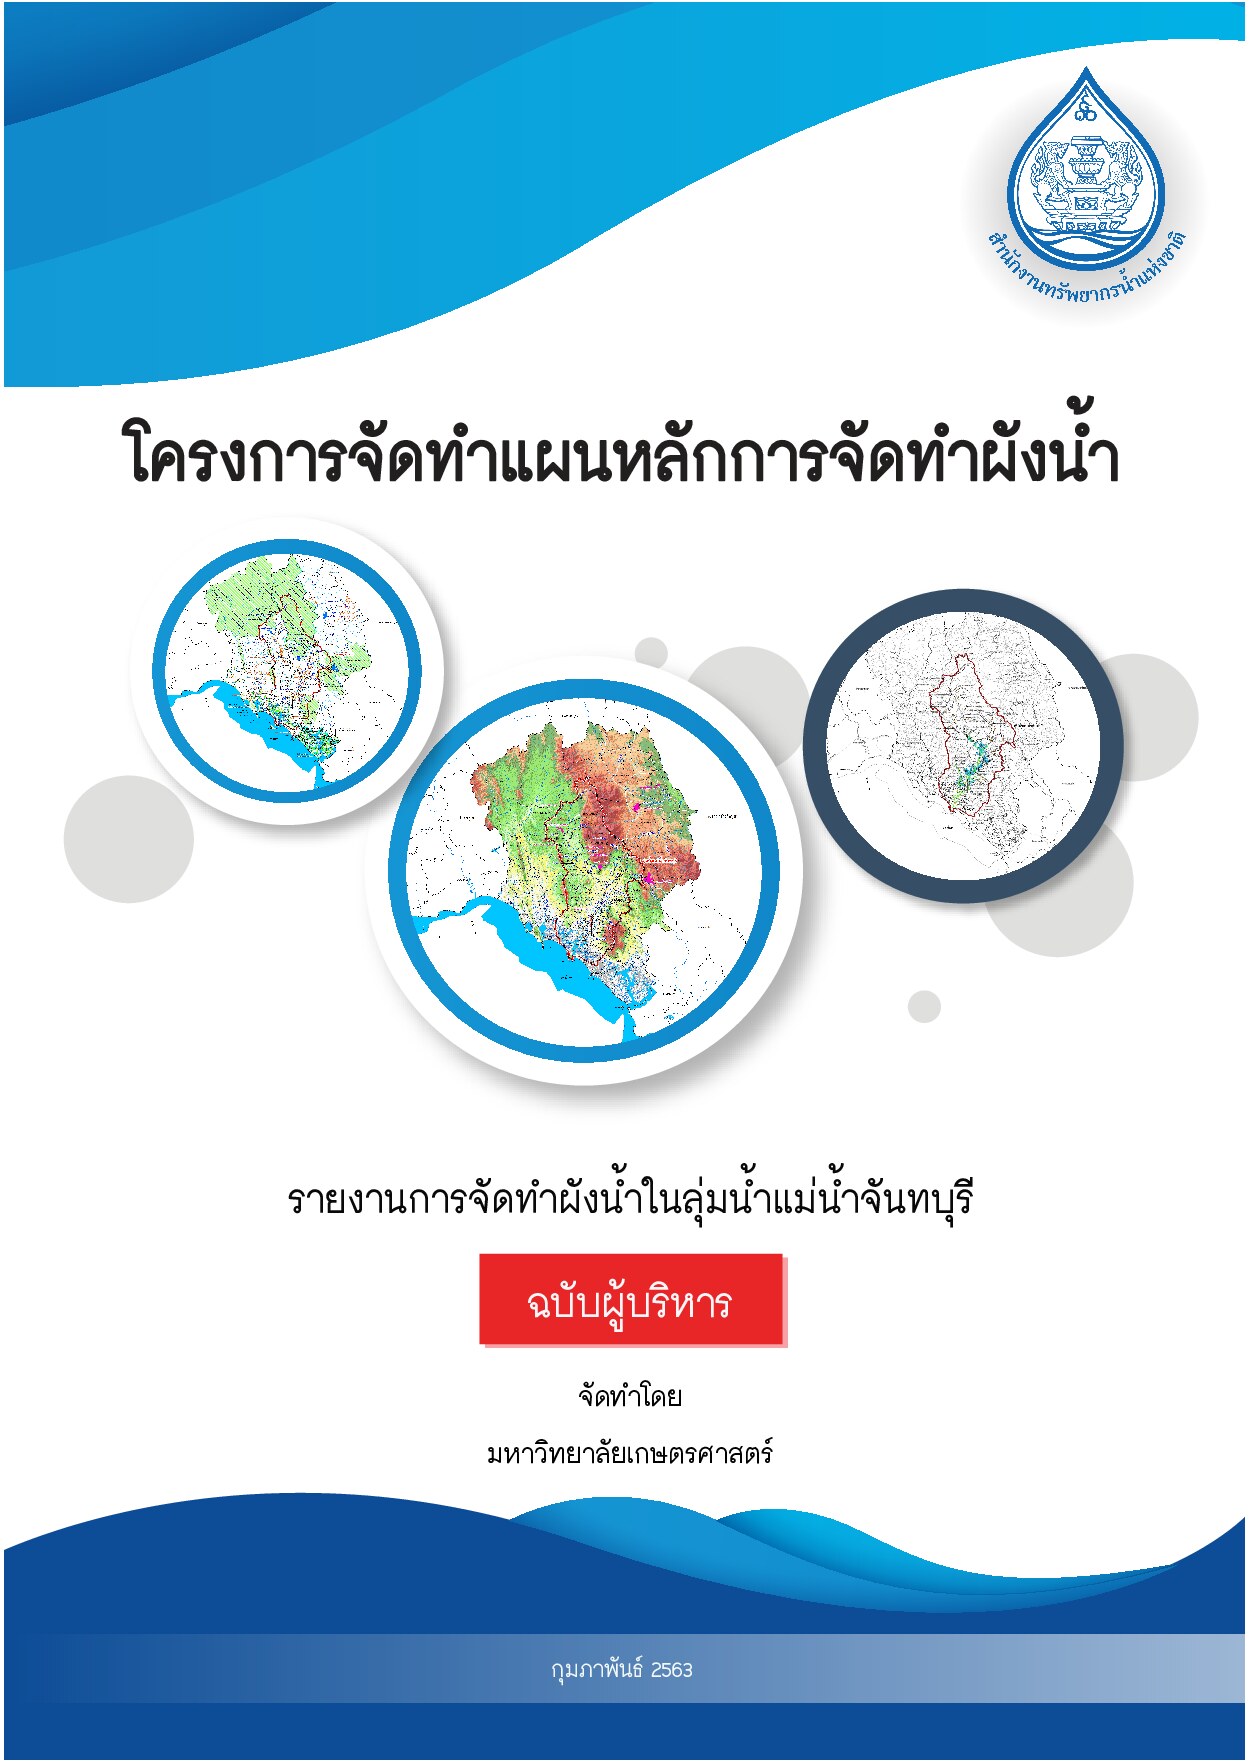 เล่มที่ 5 รายงานสรุปสำหรับผู้บริหาร (ฉบับภาษาไทย)